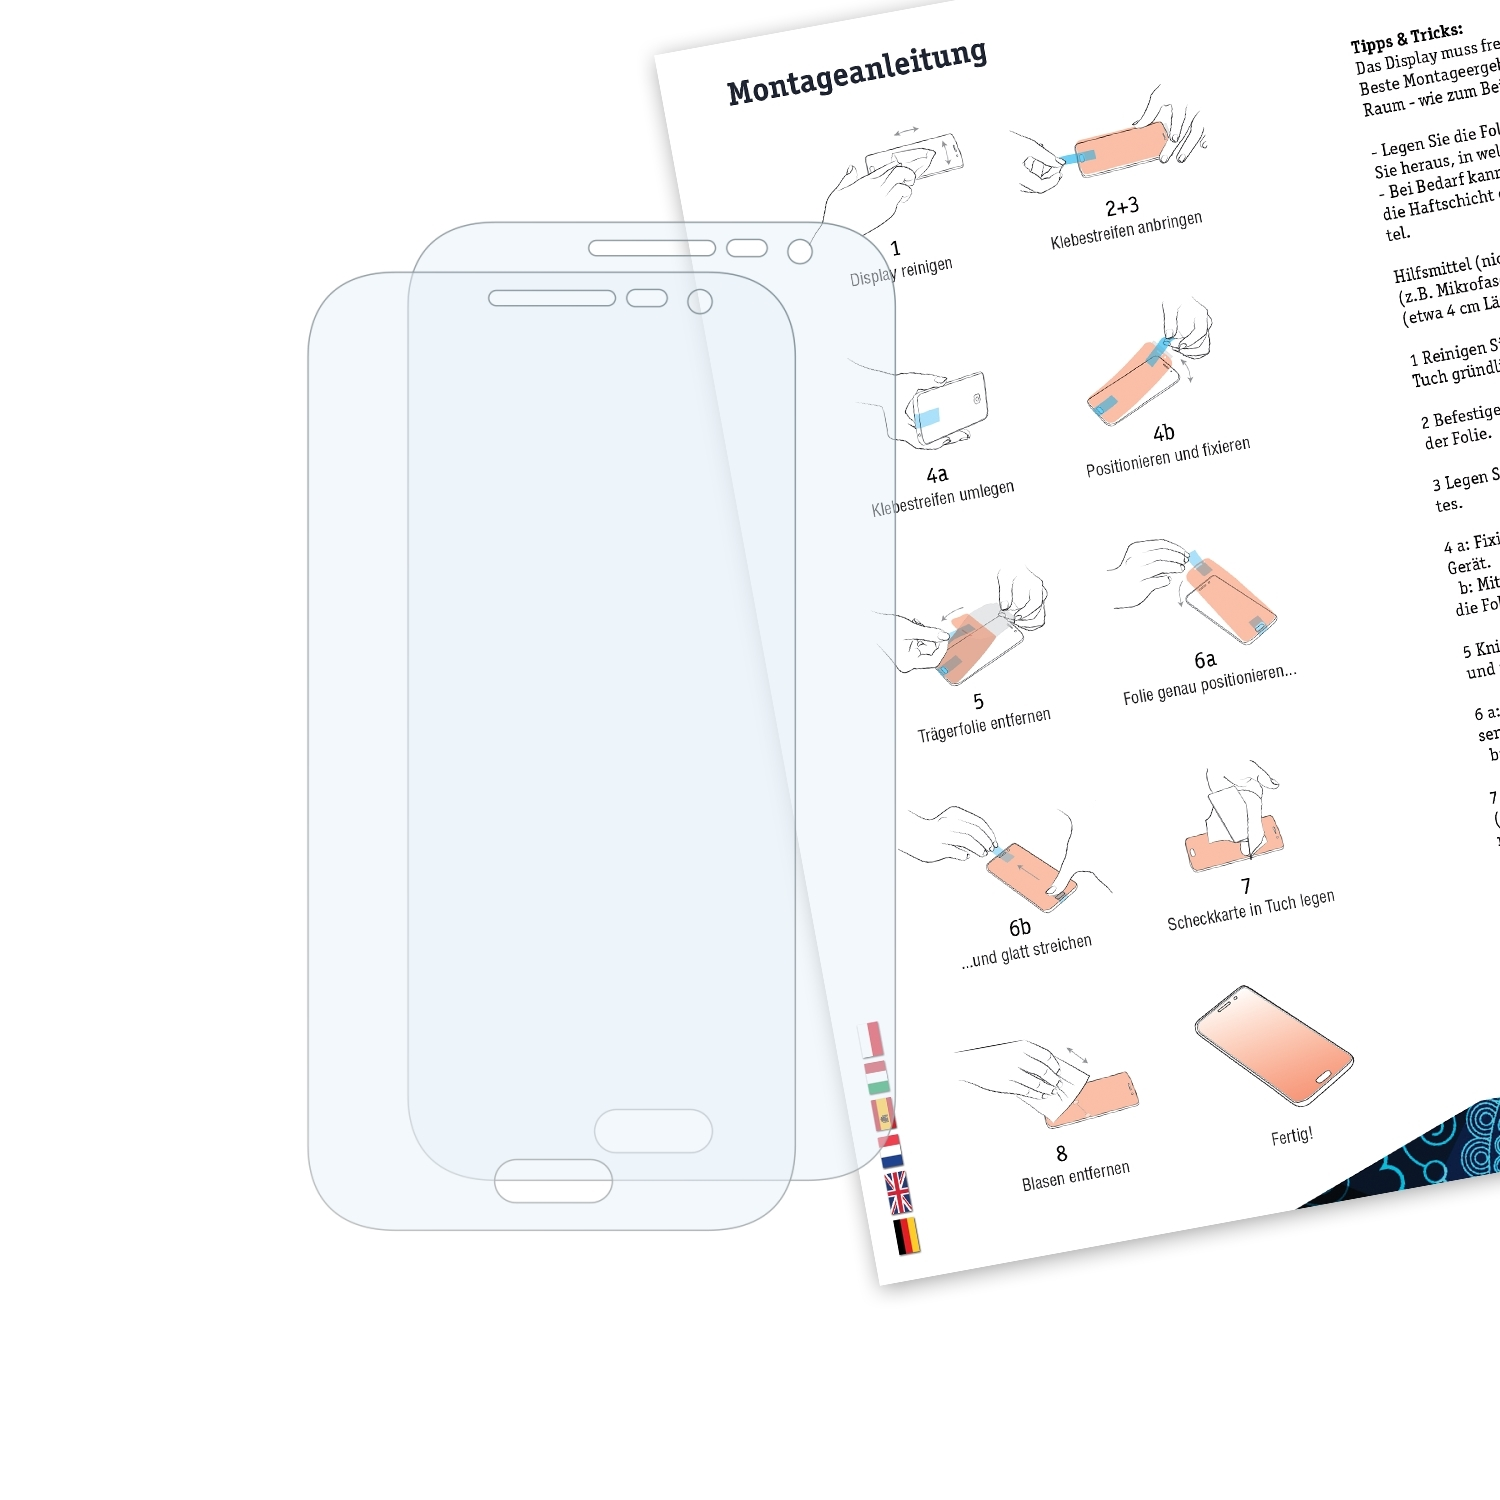 BRUNI 2x Schutzfolie(für Prime) Core Samsung Galaxy Basics-Clear